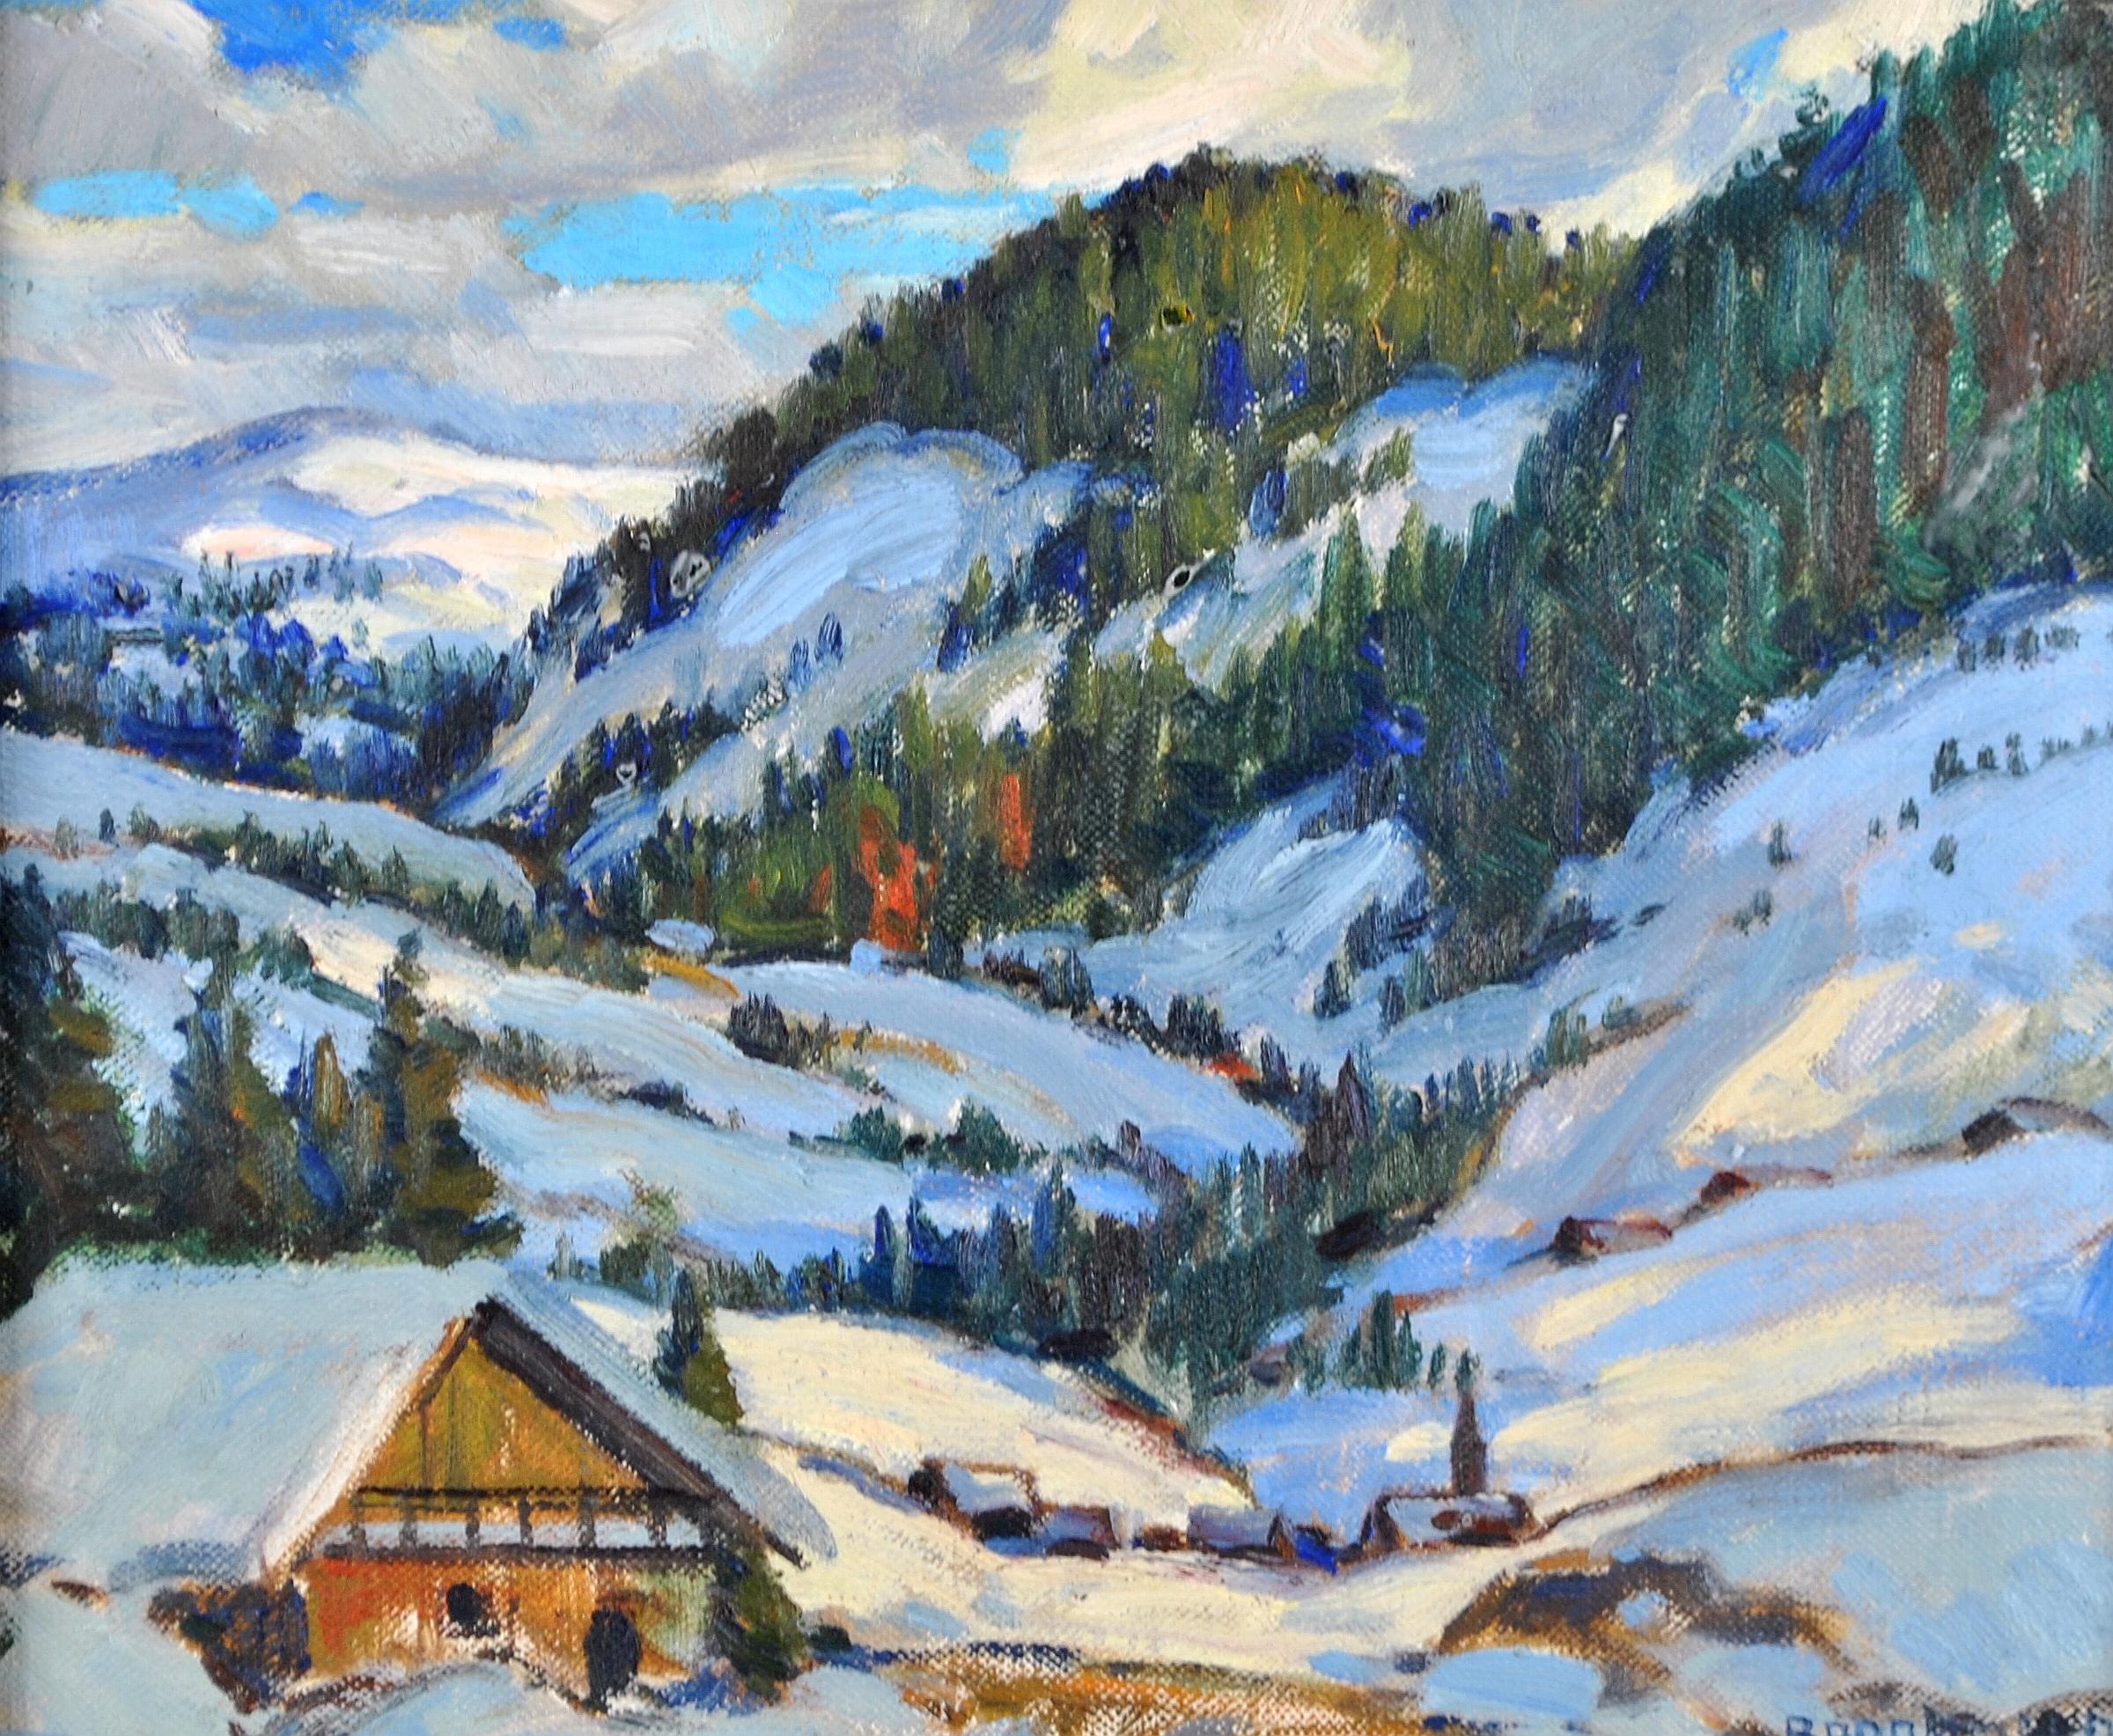 Alpine Landschaft - Impressionistisches kanadisches Ölgemälde, Schnee-Winter-Gemälde des 20. Jahrhunderts – Painting von Adolphus George Broomfield